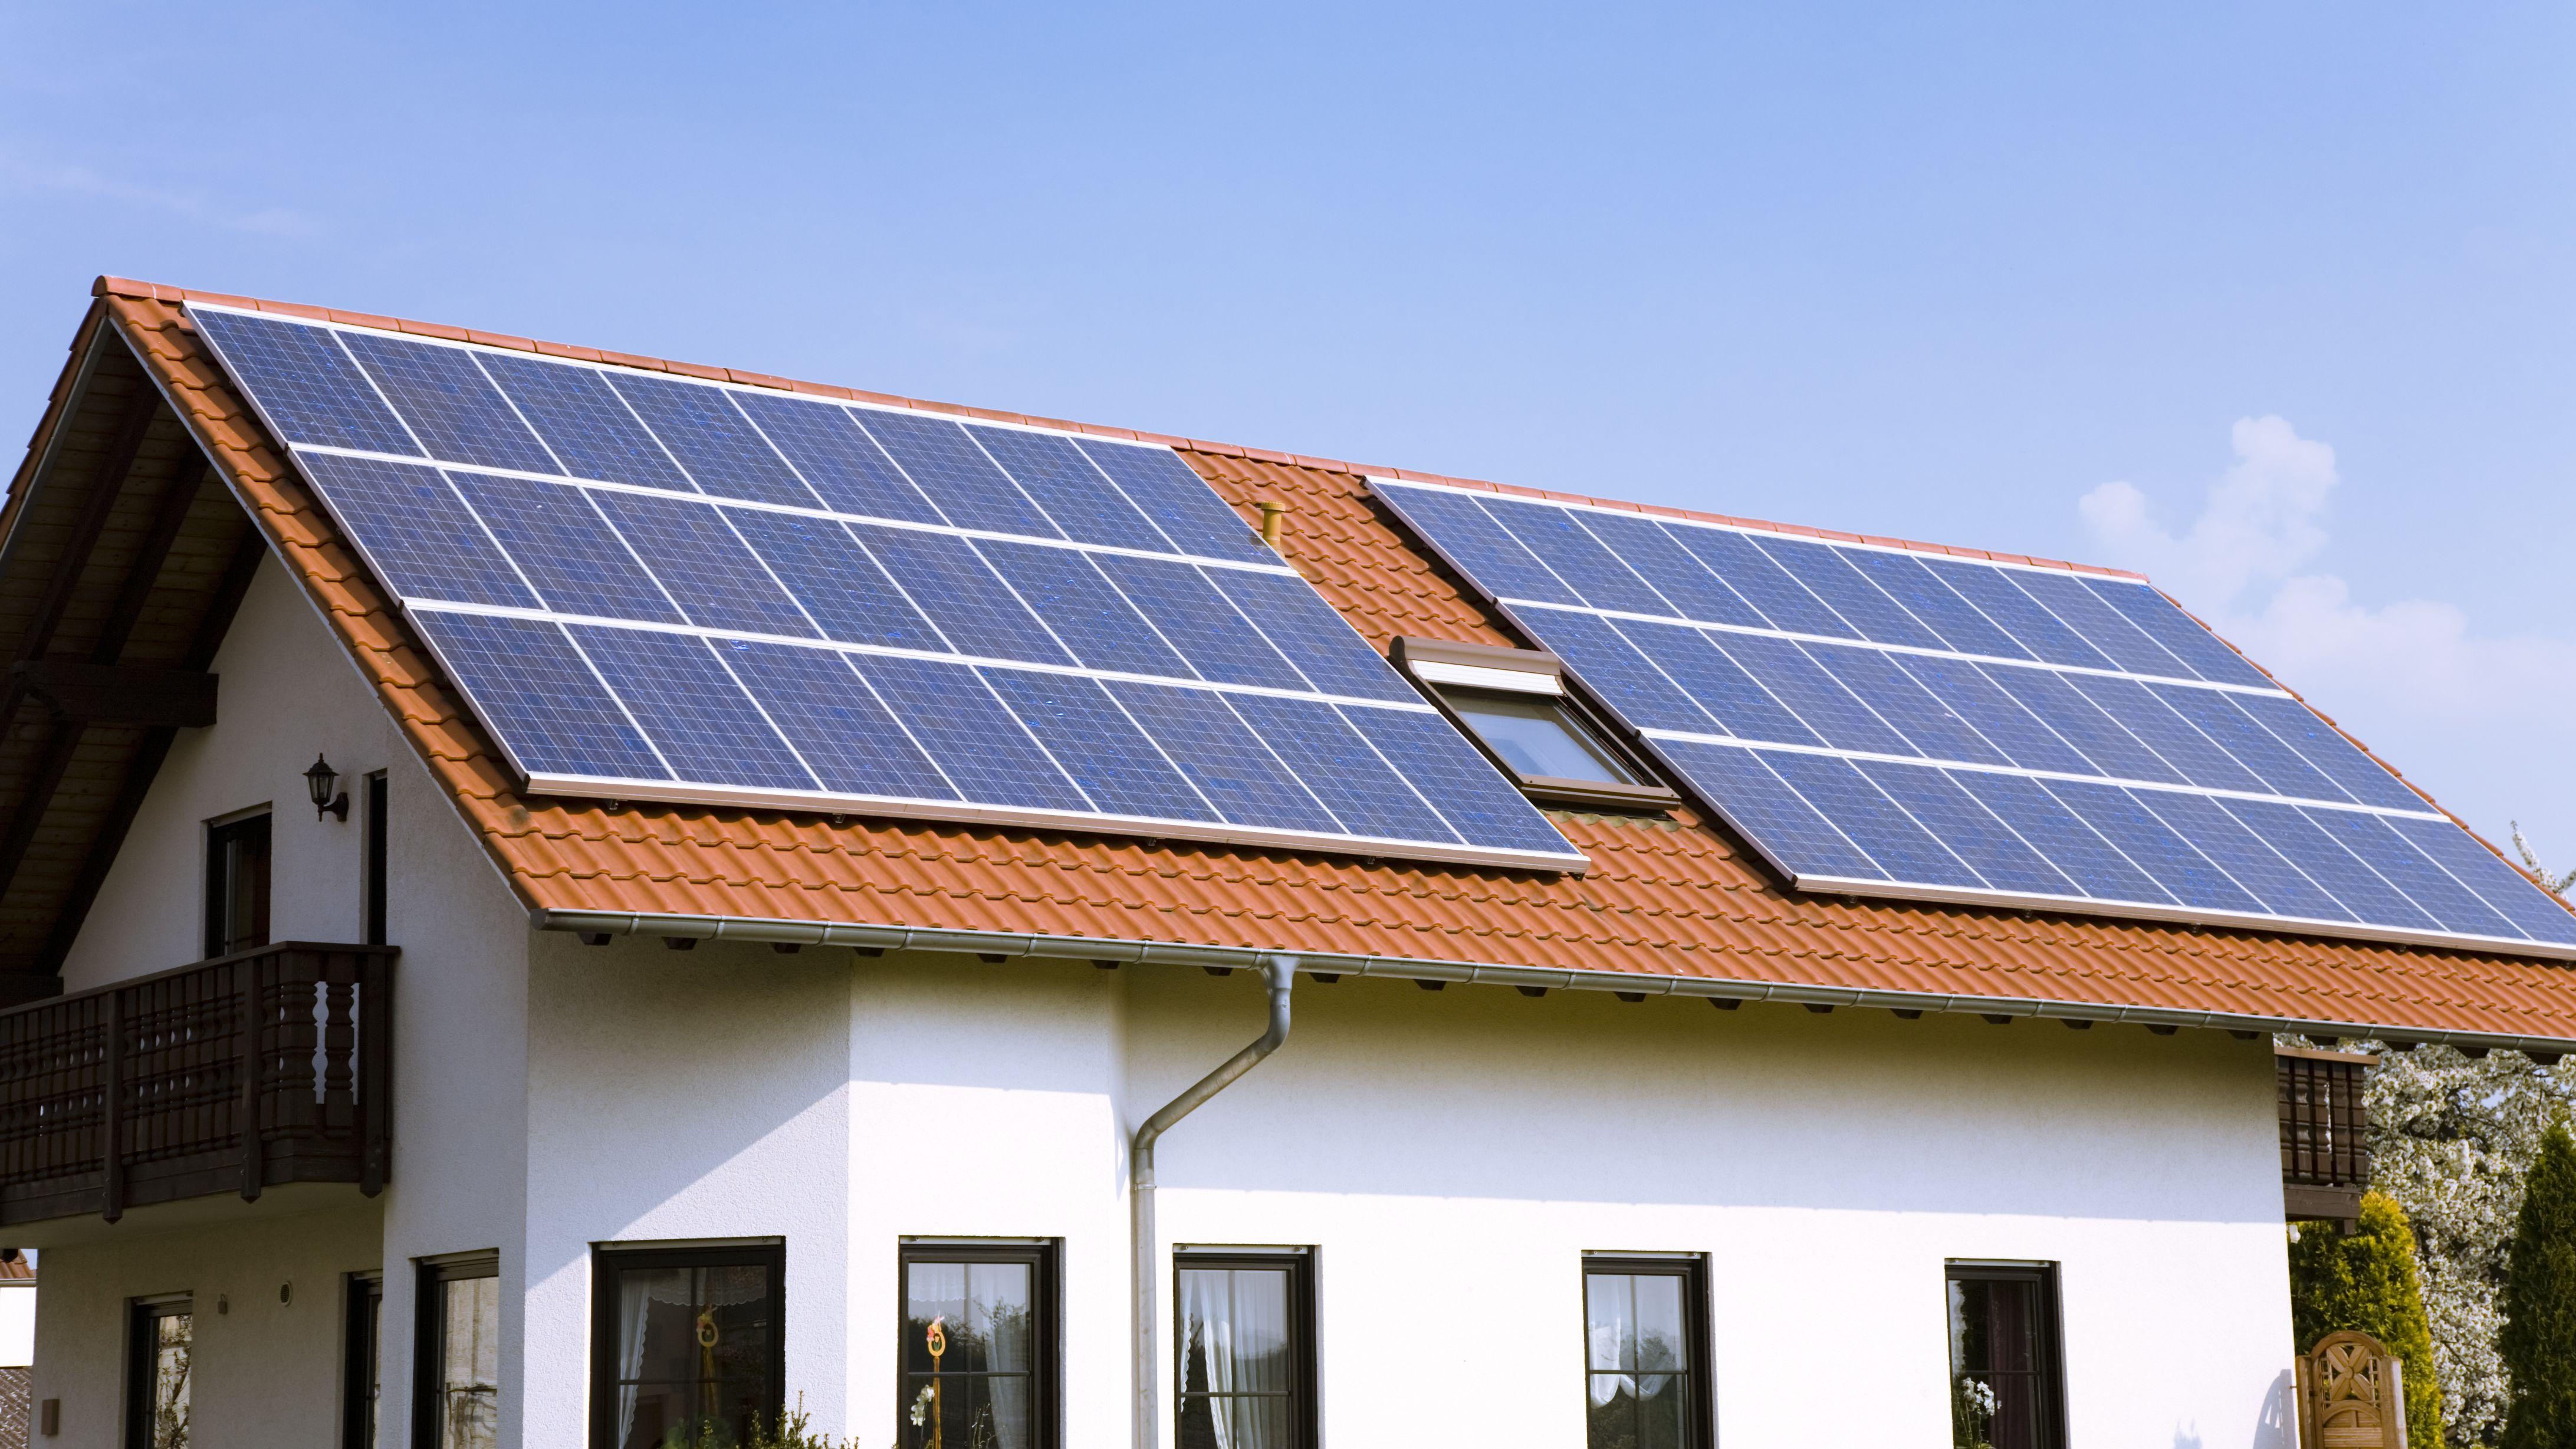 house-with-solar-panels-174673282-ab883d486cb043a985efd2f5020381d0.jpg